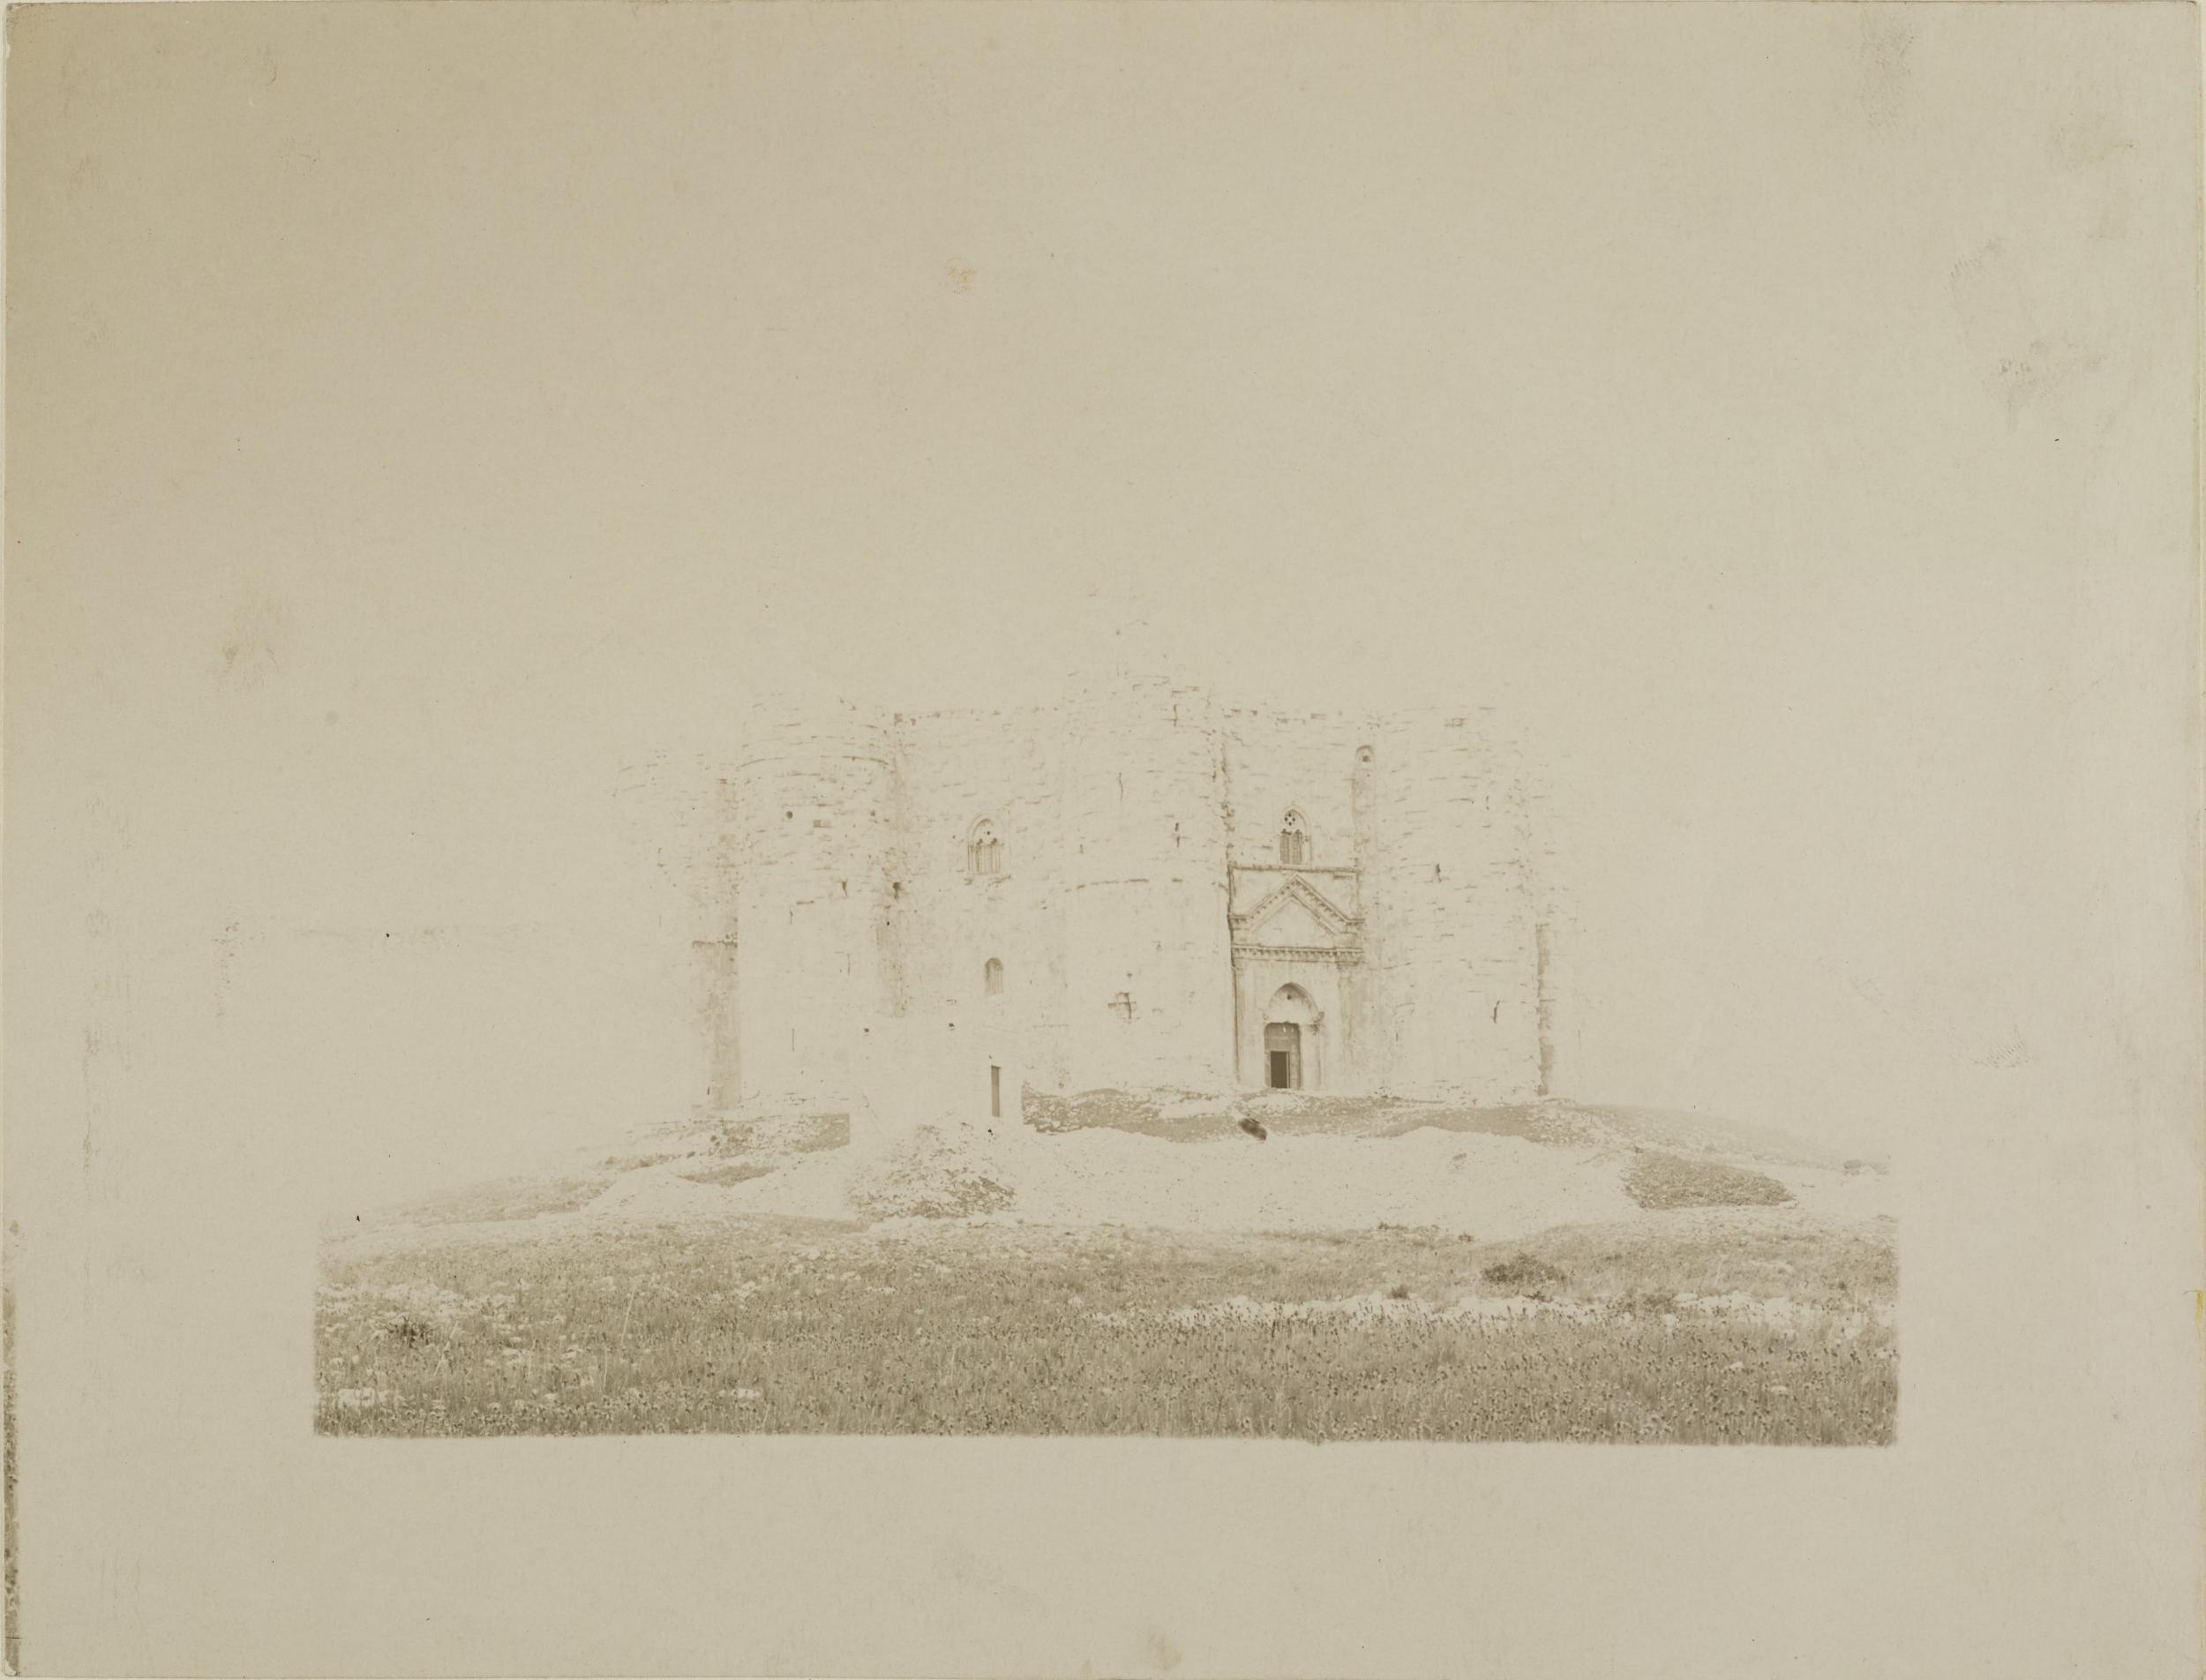 Fotografo non identificato, Andria, Castel del Monte - Veduta del castello dalla parte principale, 1951-2000, gelatina ai sali d'argento/carta, MPI131890